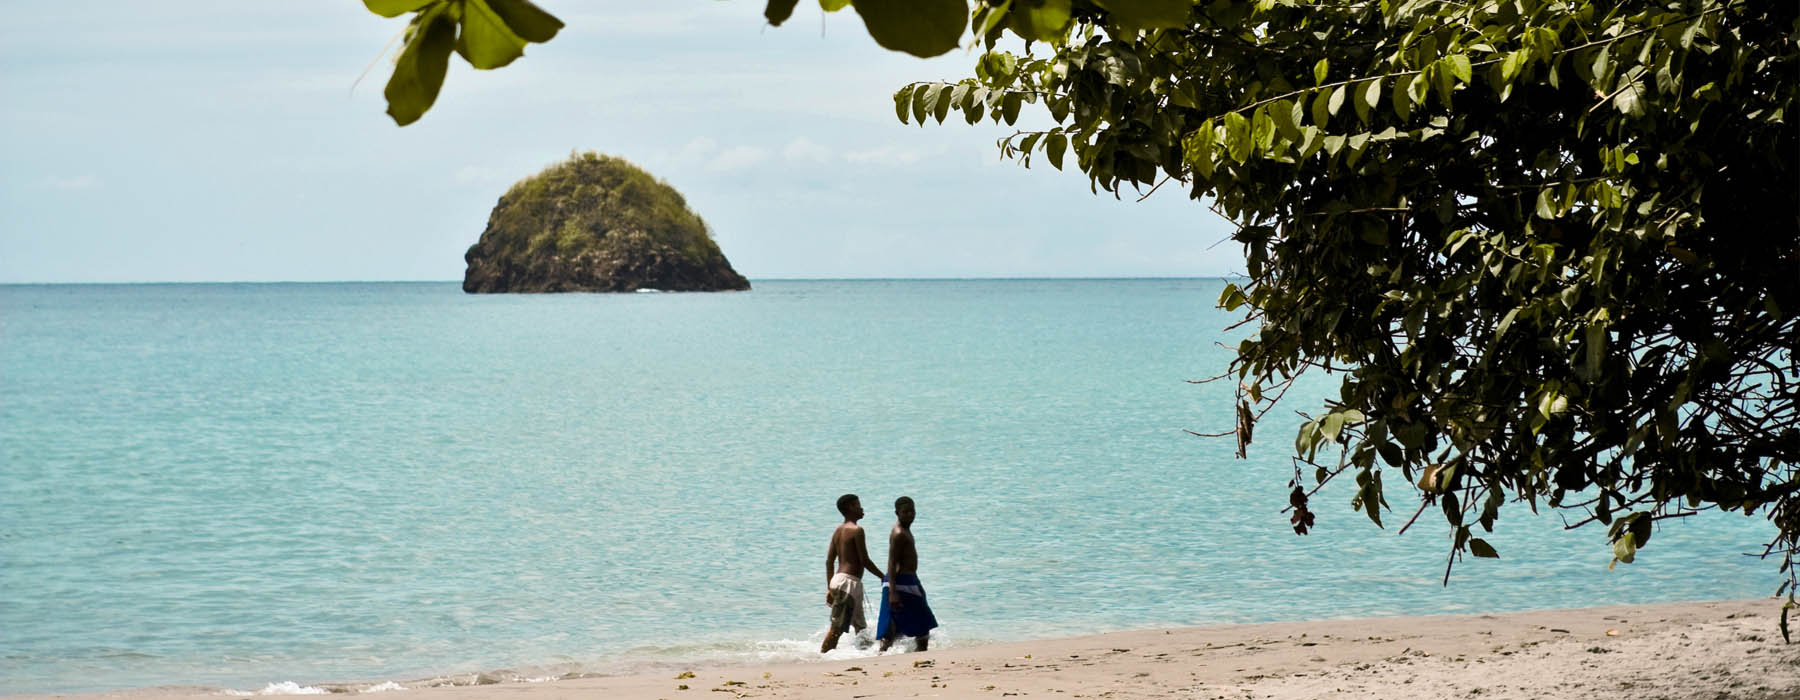 La plage mais pas seulement Martinique